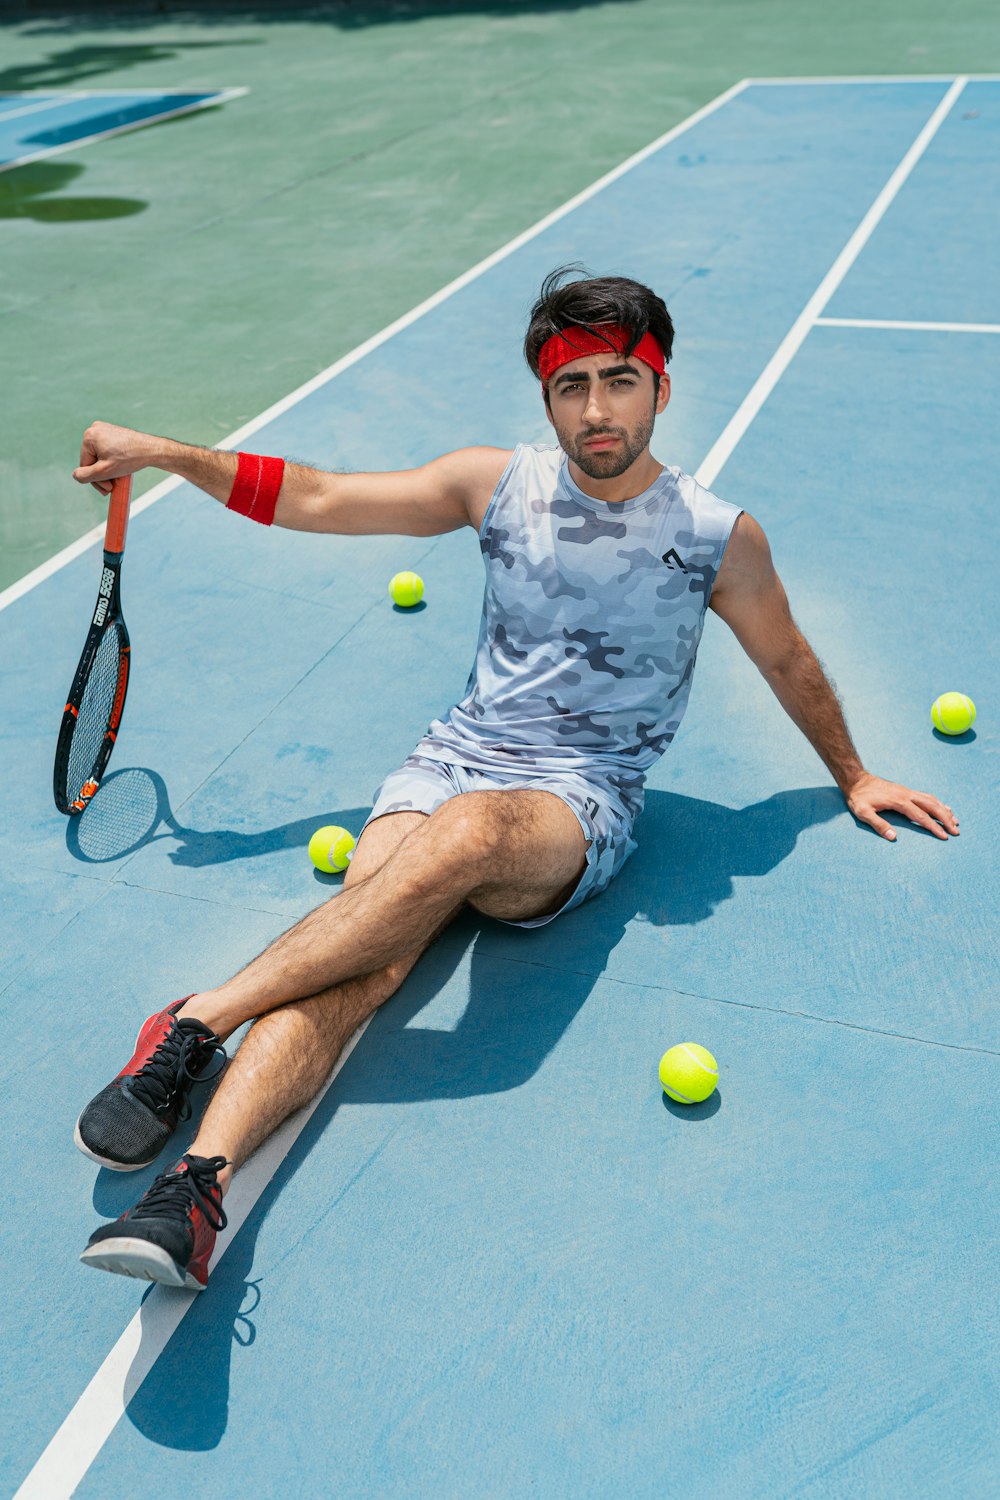 a man sitting on a tennis court holding a tennis racquet